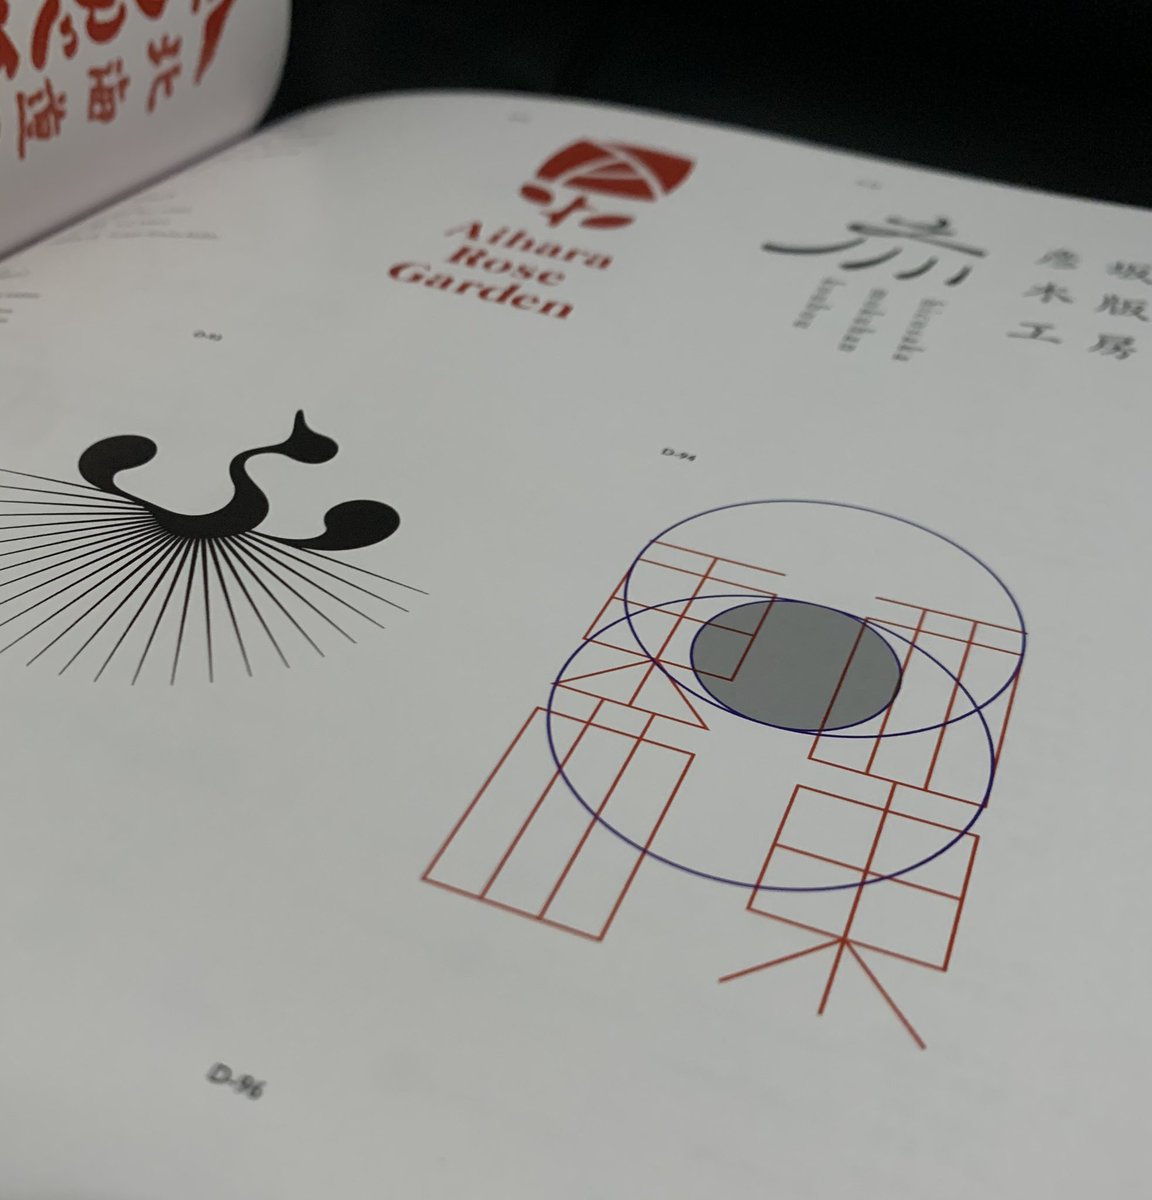 日本タイポグラフィ年鑑2020をよむ(╹◡╹)

高いけどとっても参考になるデザインがたくさん載ってるからオススメ!! 